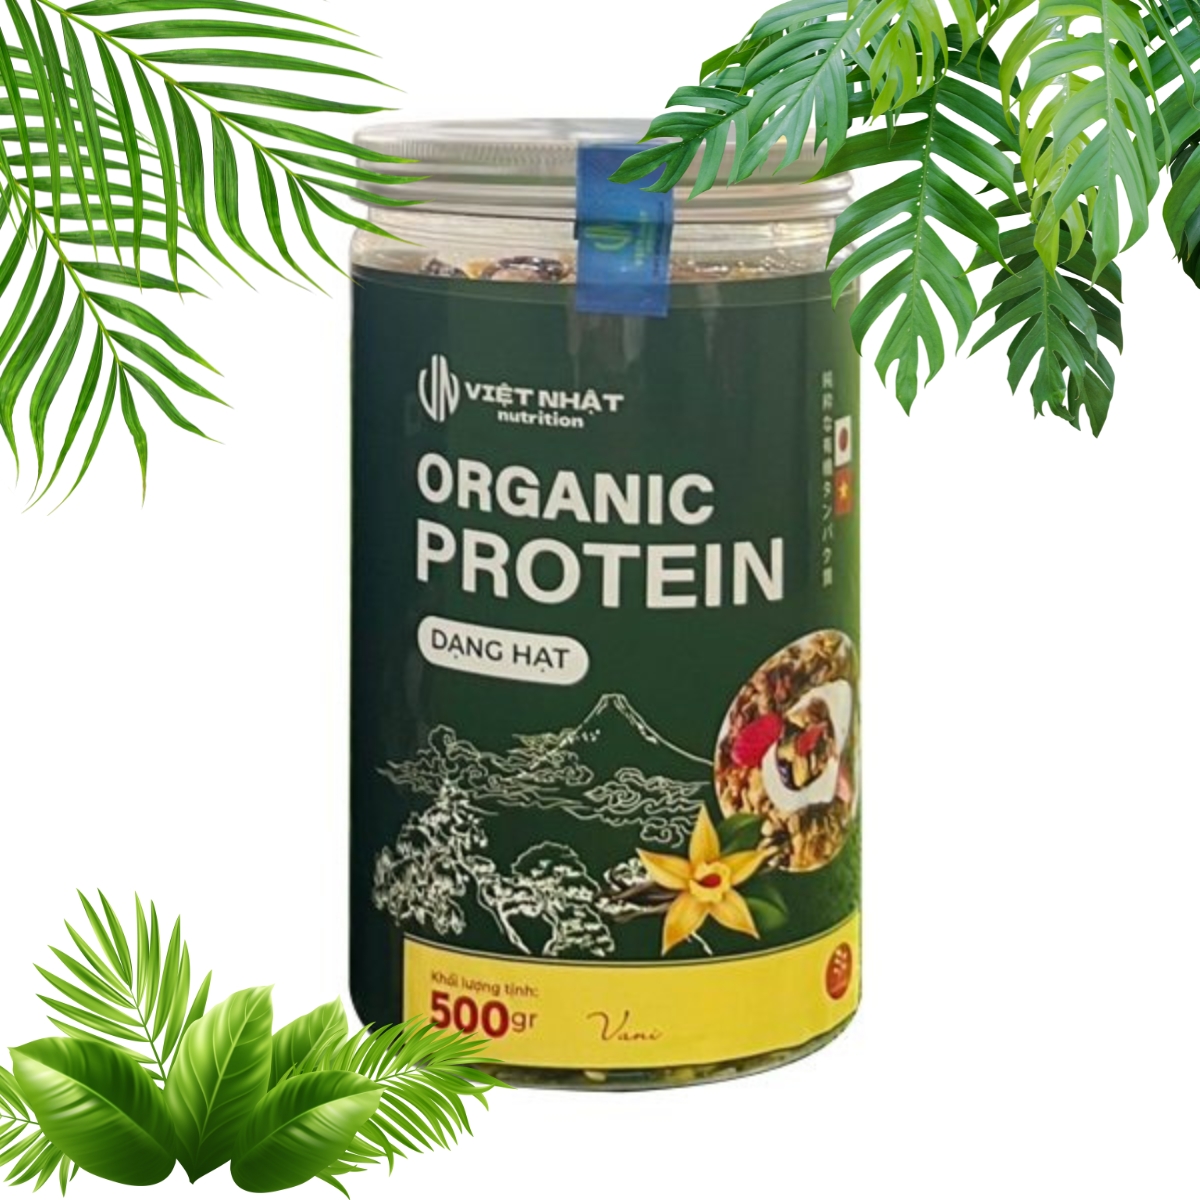 Organic Protein Dạng Hạt (Granola) Việt Nhật - giảm mỡ (hộp 500g)